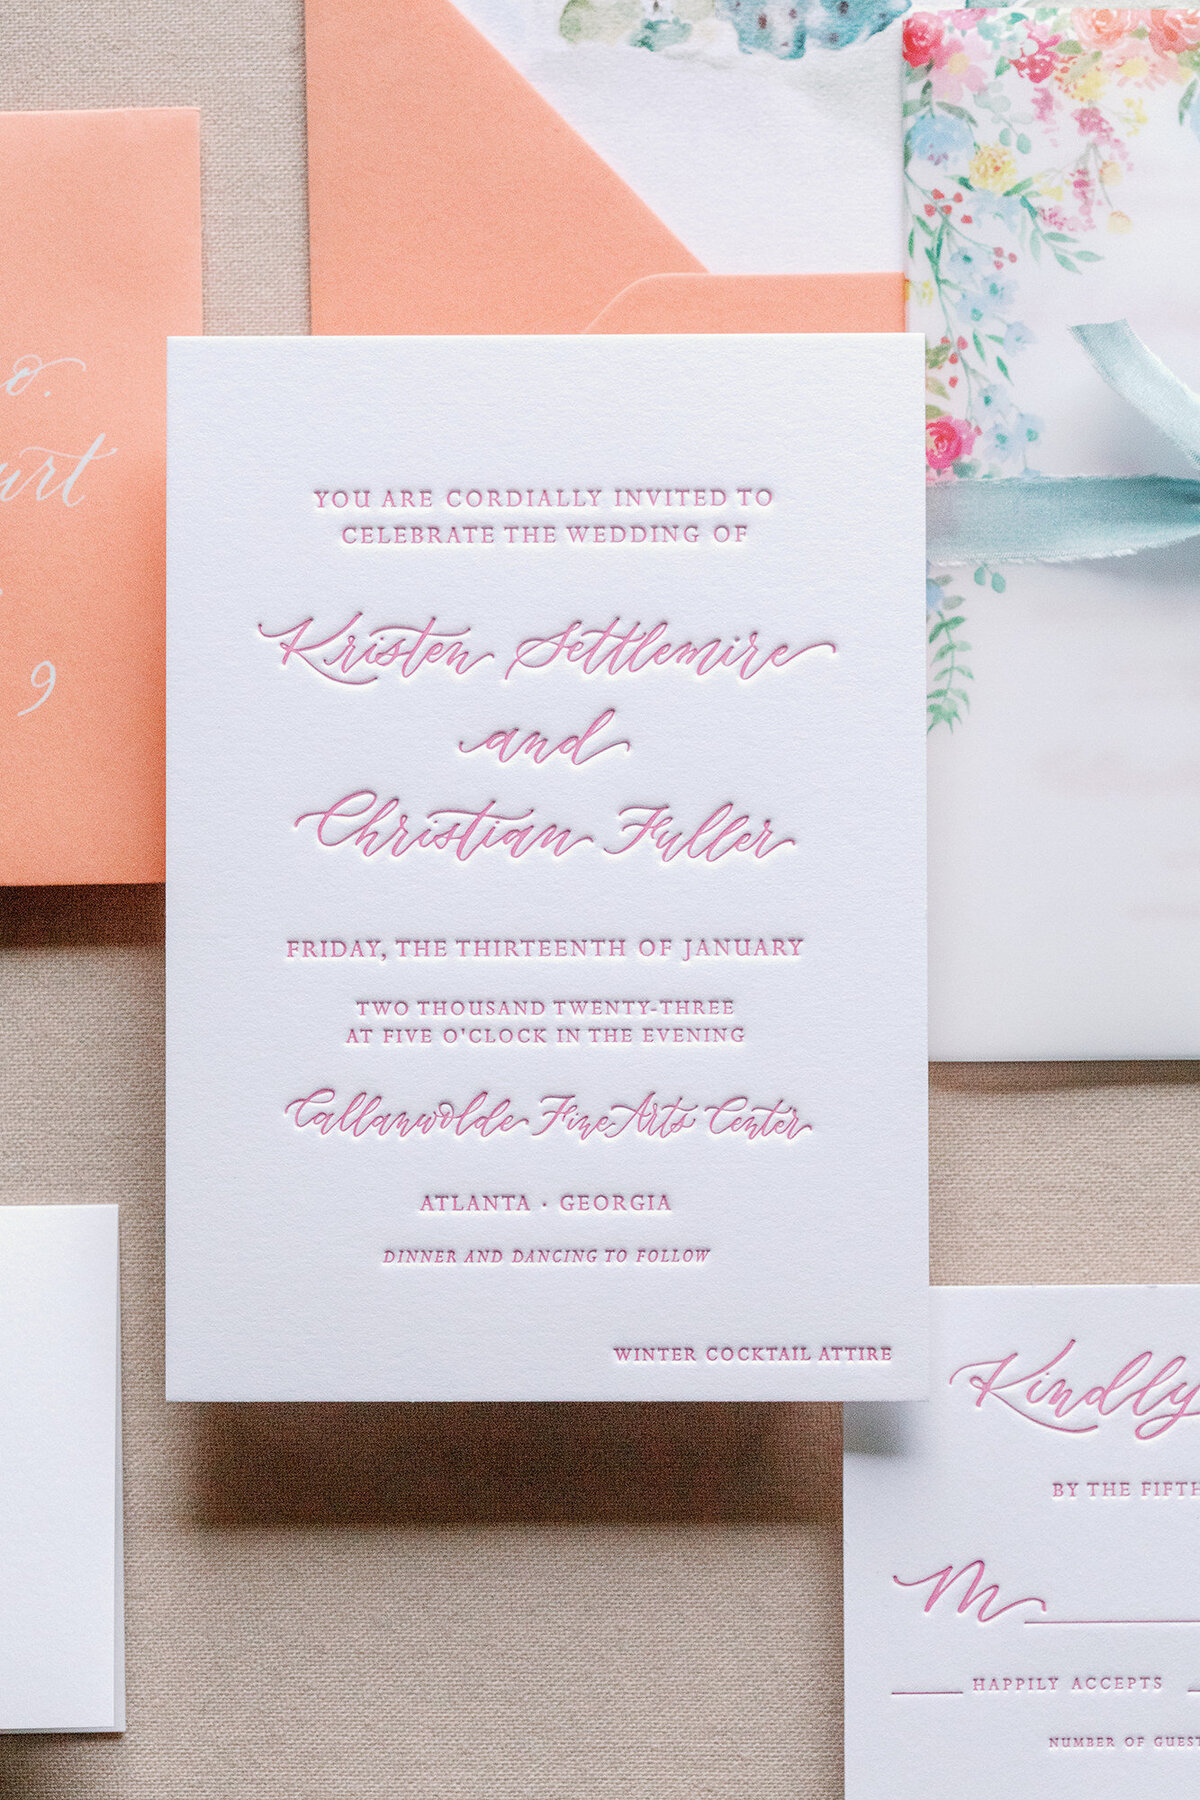 Atlanta Letterpress Wedding Invitations